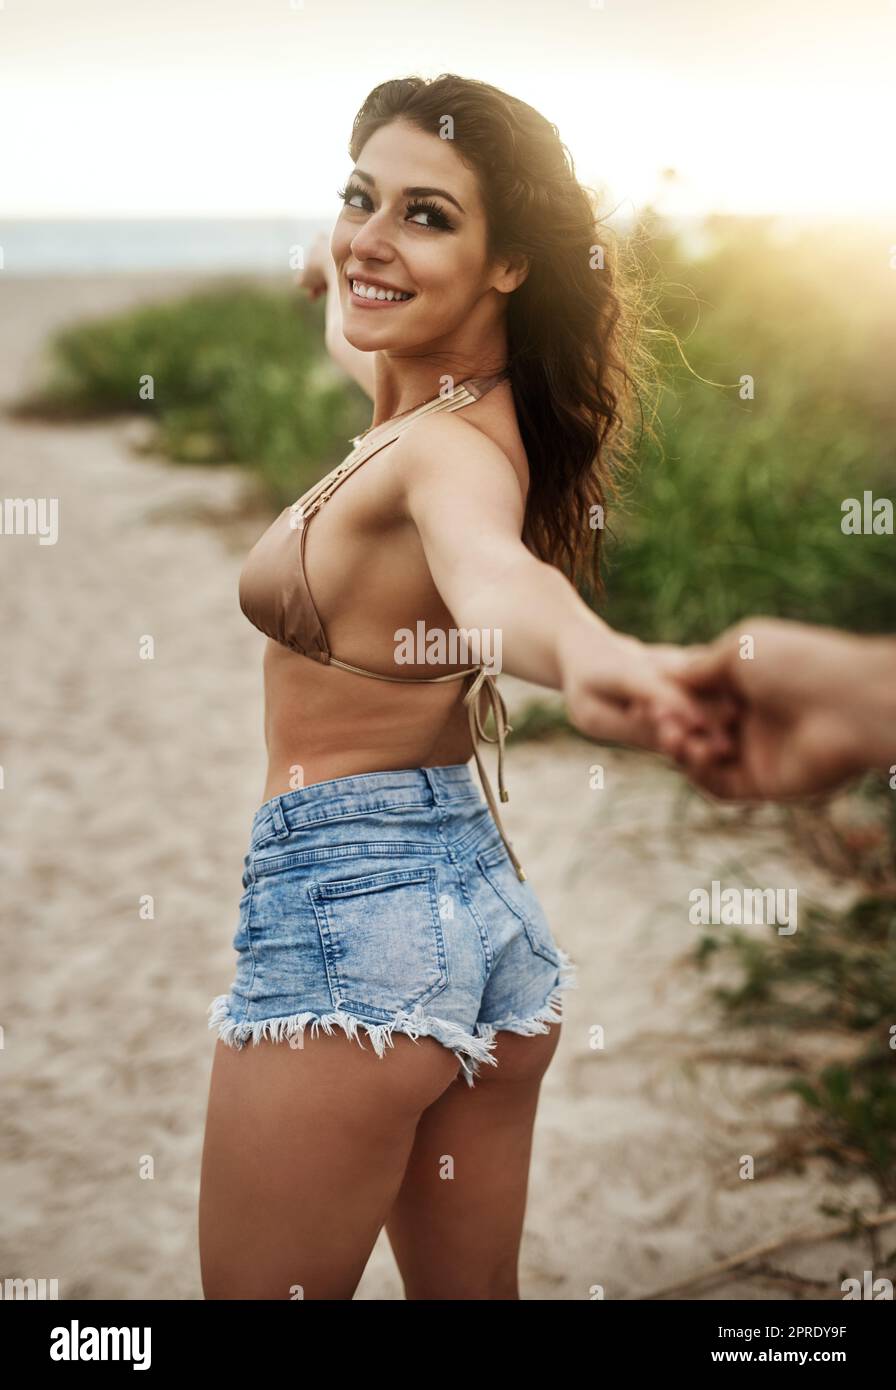 Ich hab dich Baby. Eine schöne junge Frau, die ihren Freund an der Hand am Strand führt. Stockfoto